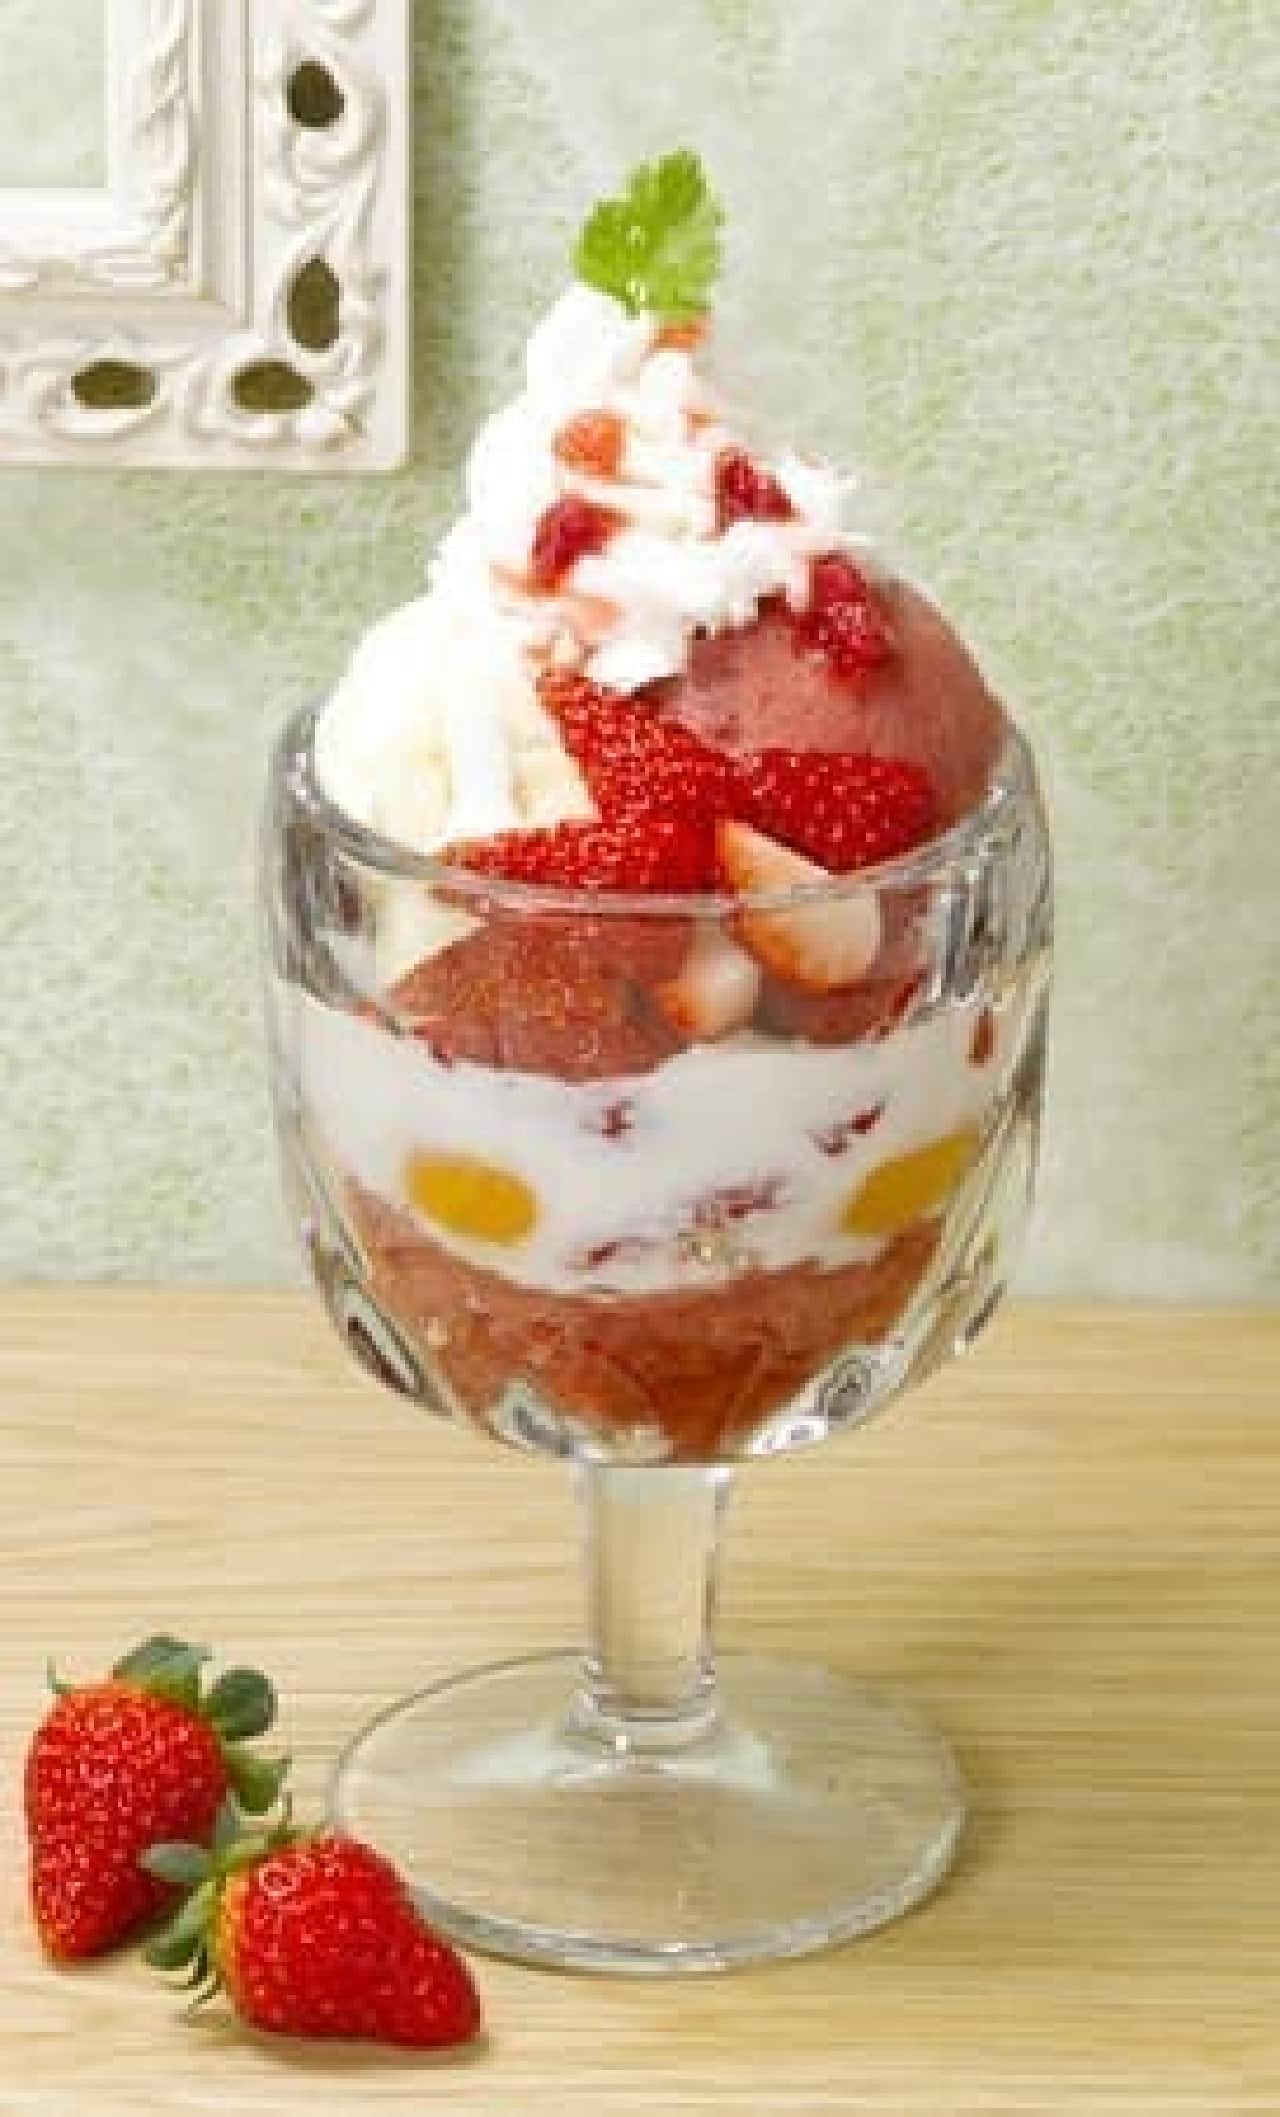 Royal Host "Strawberry Yogurt Germanie"